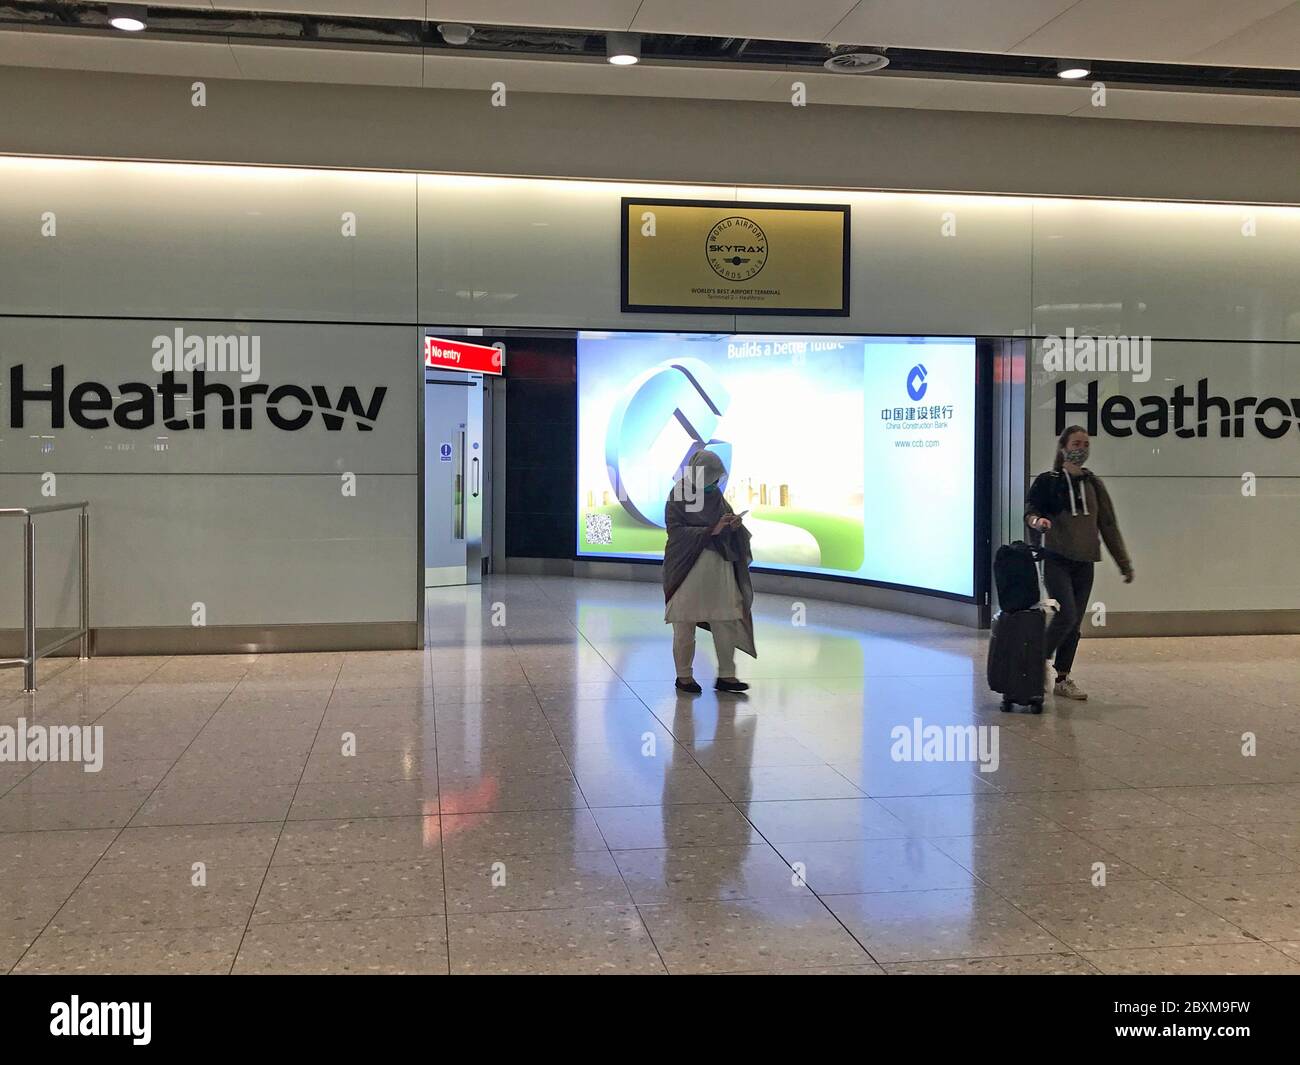 Les gens viennent dans le hall des arrivées du terminal 2 de l'aéroport de Heathrow à Londres, alors que de nouvelles mesures de quarantaine pour les arrivées internationales entrent en vigueur. Banque D'Images